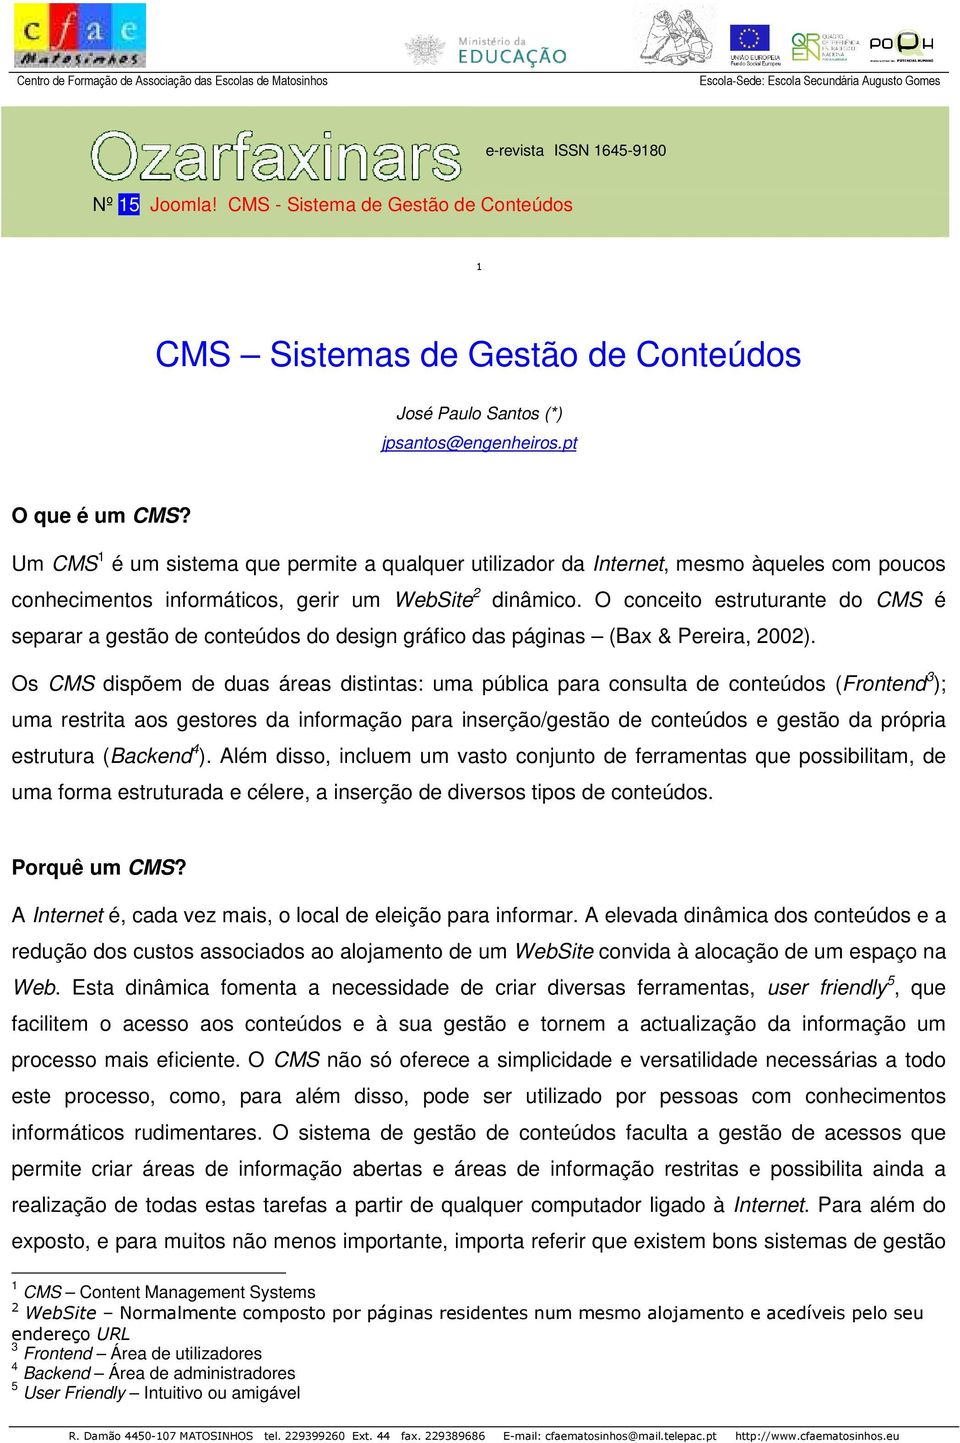 O conceito estruturante do CMS é separar a gestão de conteúdos do design gráfico das páginas (Bax & Pereira, 2002).